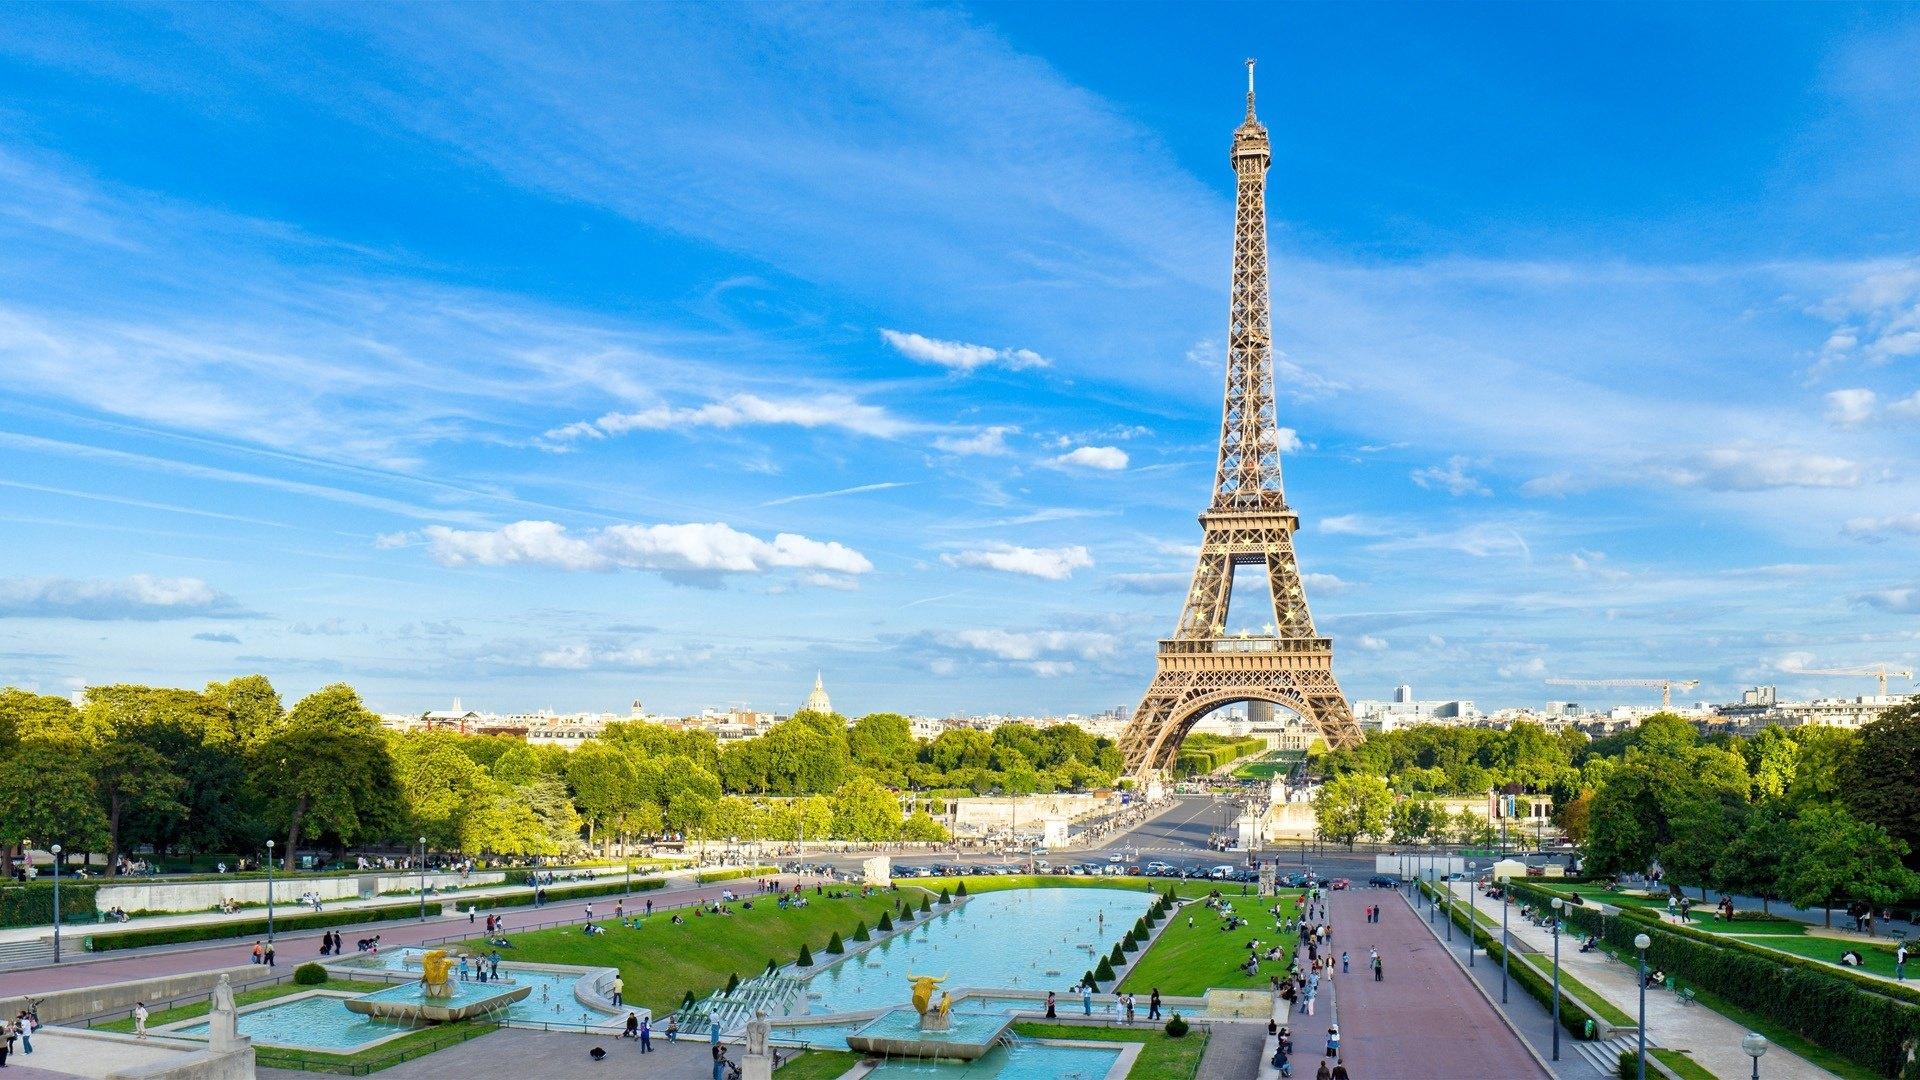 法国巴黎城市建筑风景桌面壁纸-壁纸图片大全